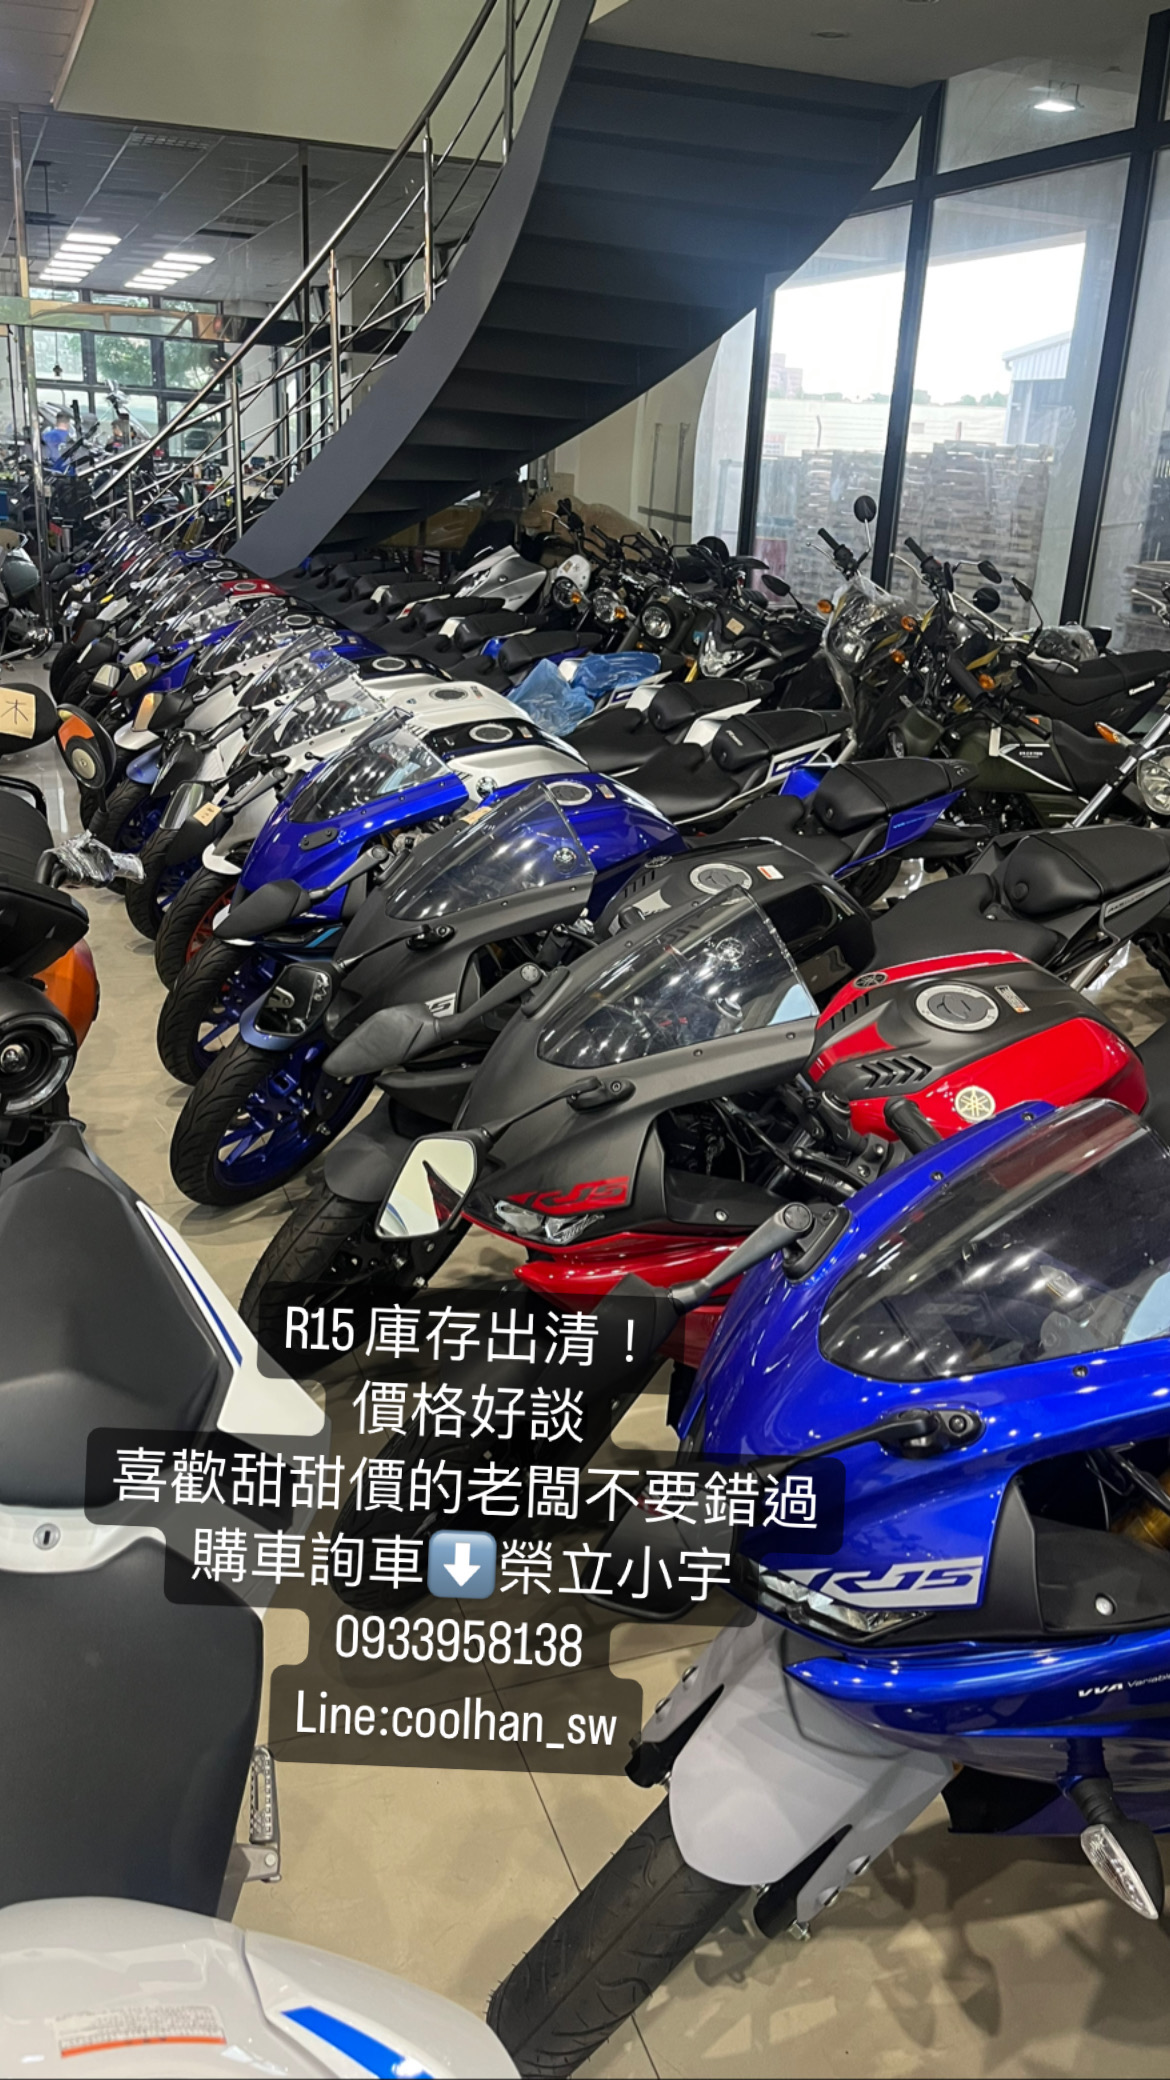 【個人自售】Yamaha R15 - 「Webike-摩托車市」 【榮立小宇】 Yamaha r15 庫存出清  價格好談 購車詢車請洽榮立小宇 0933958138 亦可用賴搜尋